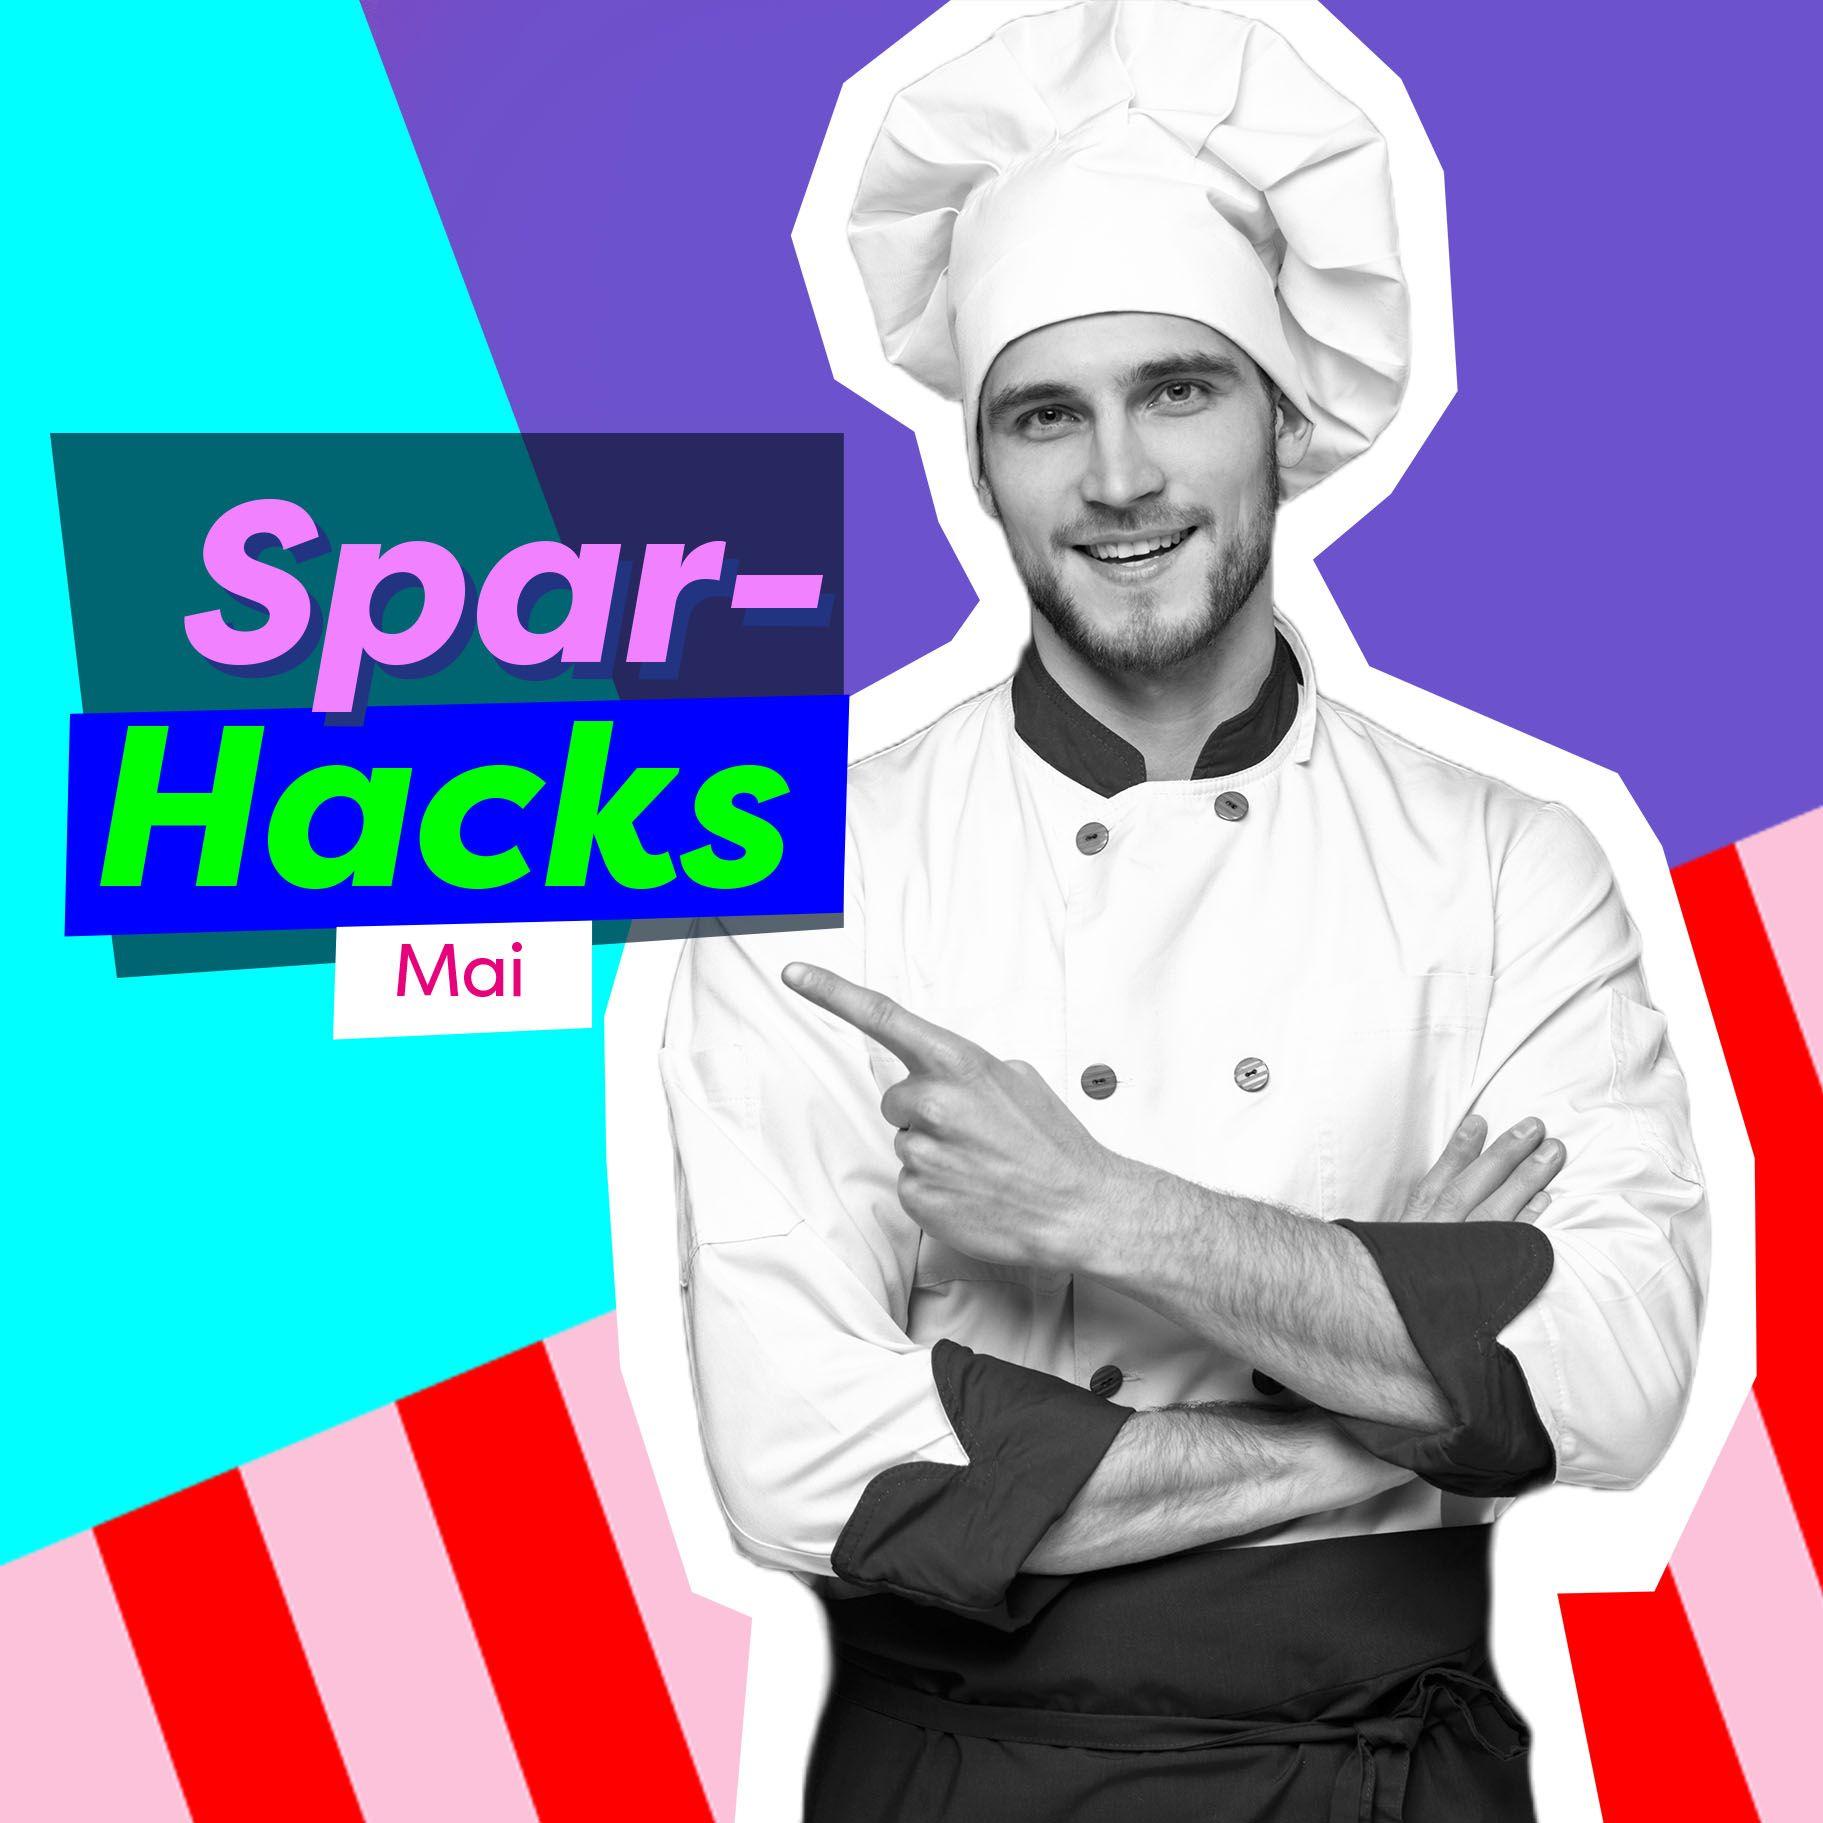 Eine bunte Bild-Komposition mit einem Koch in schwarz-weiß und der Aufschrift Spar-Hacks Mai